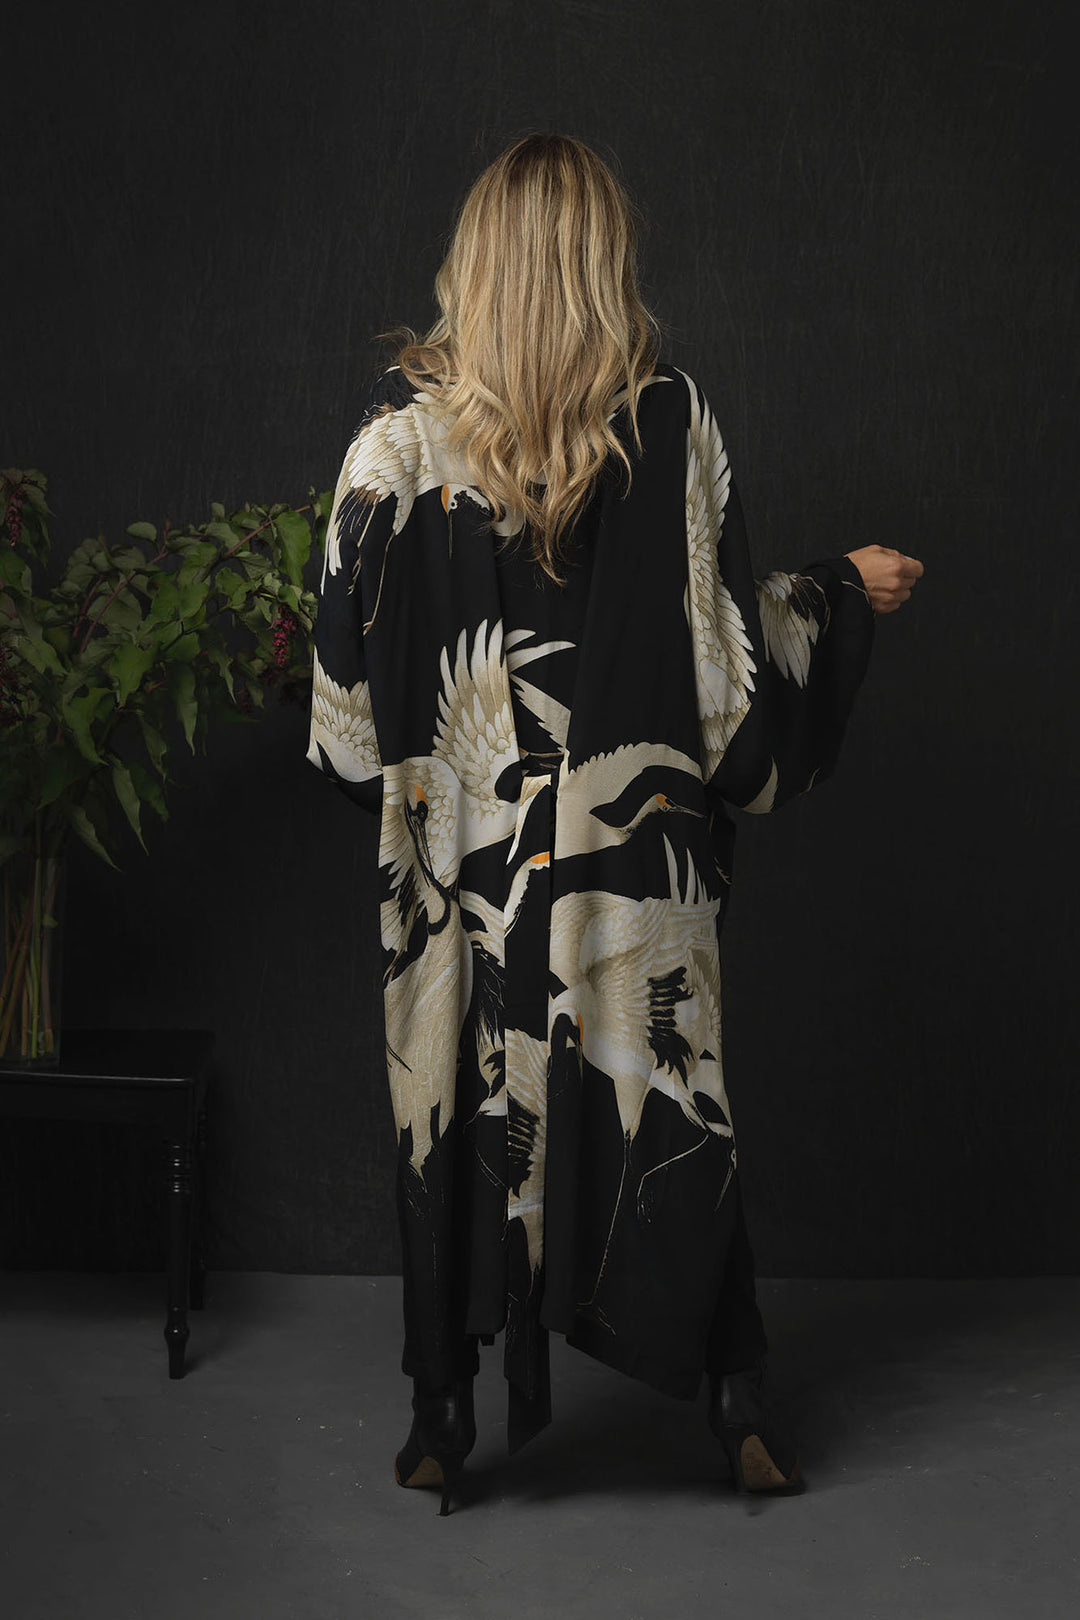 Stork Black Crepe Long Kimono